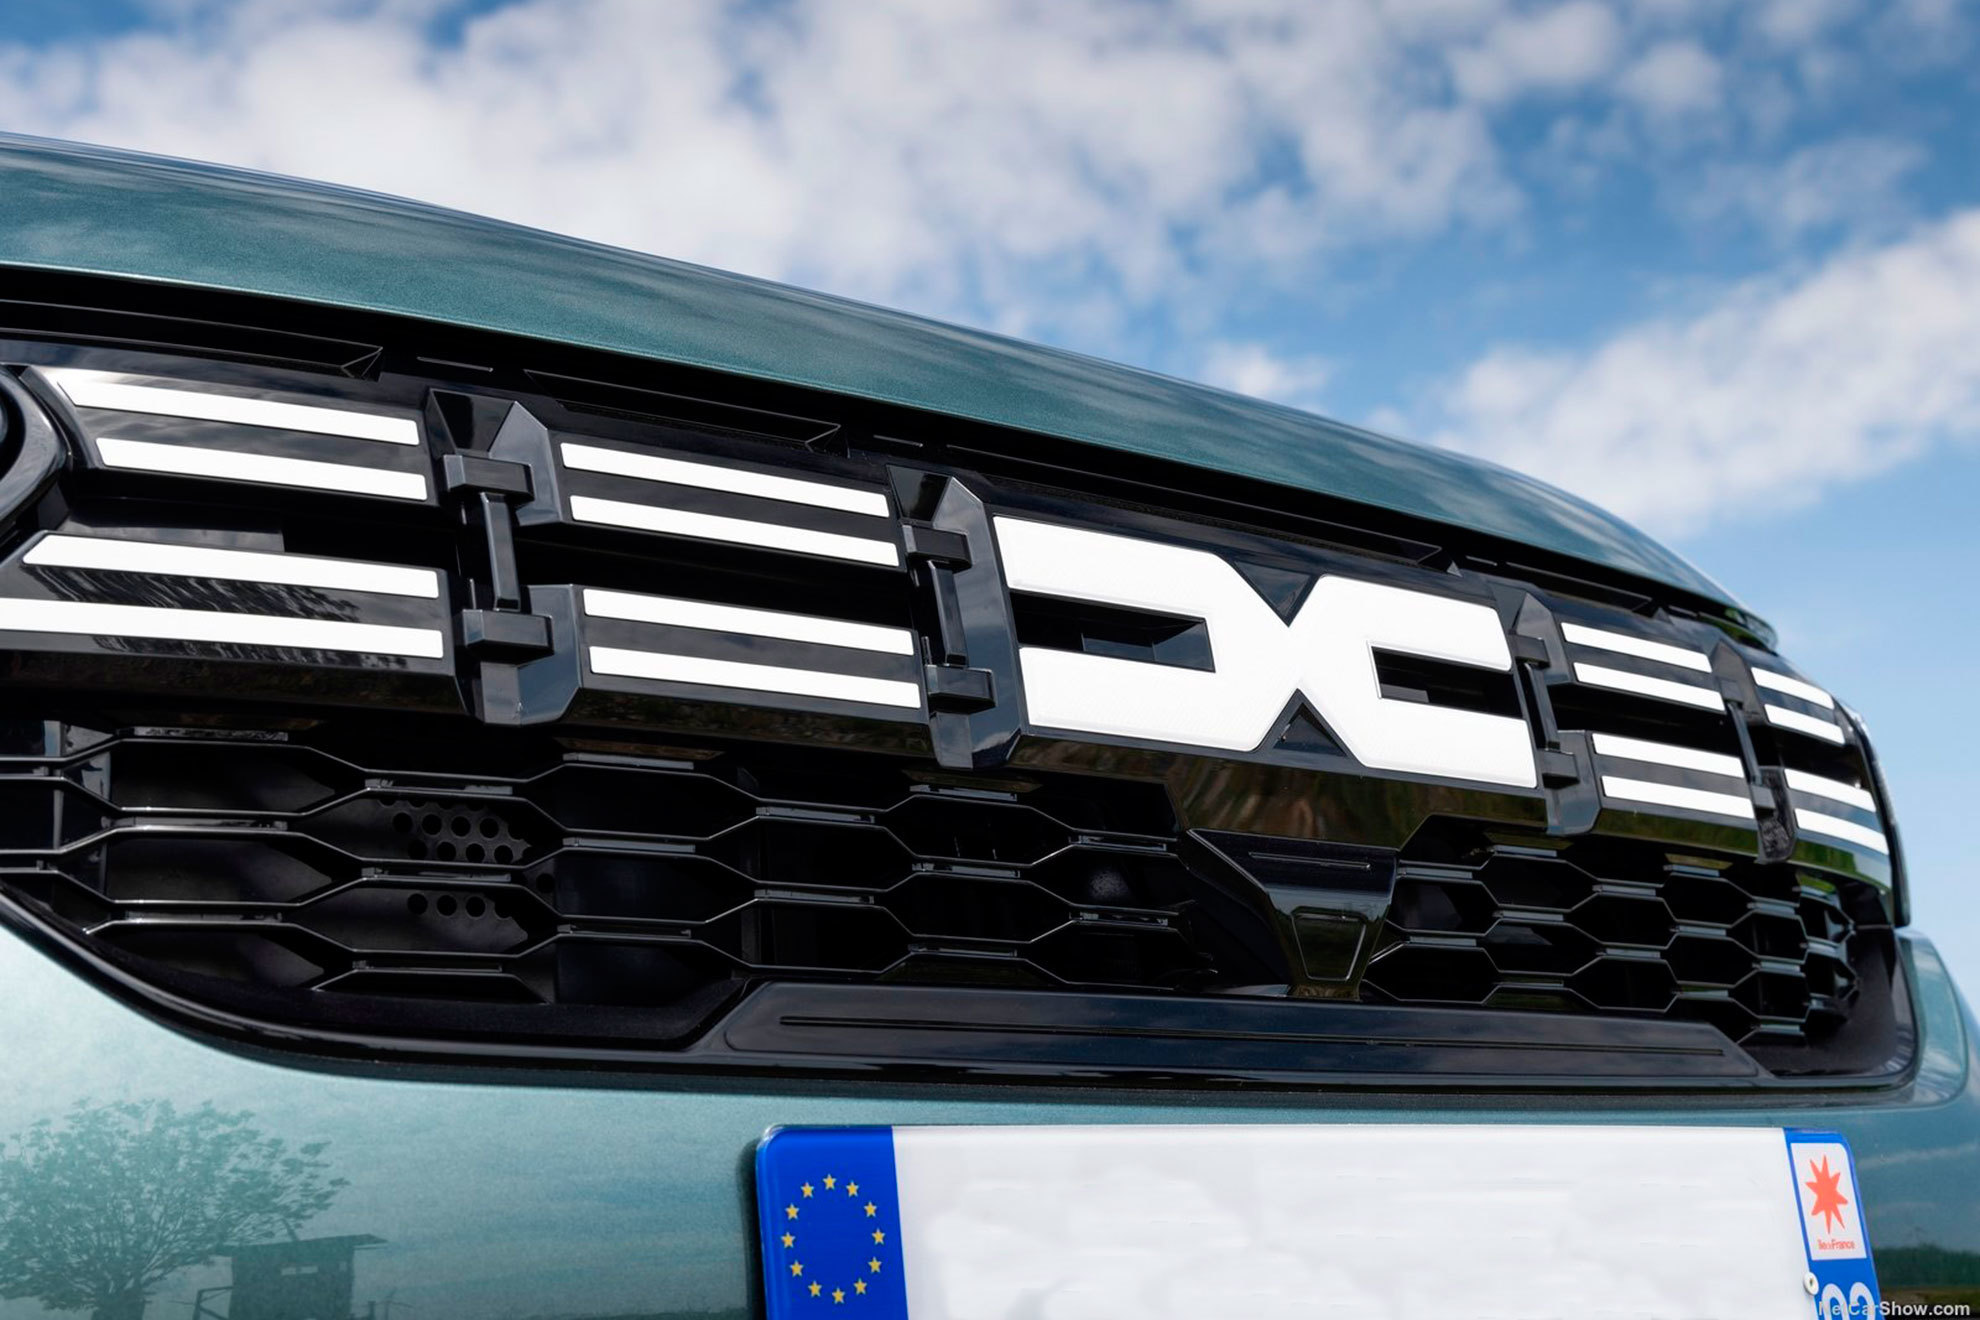 La parrilla de los nuevos Dacia es ahora más reconocible y atractiva.